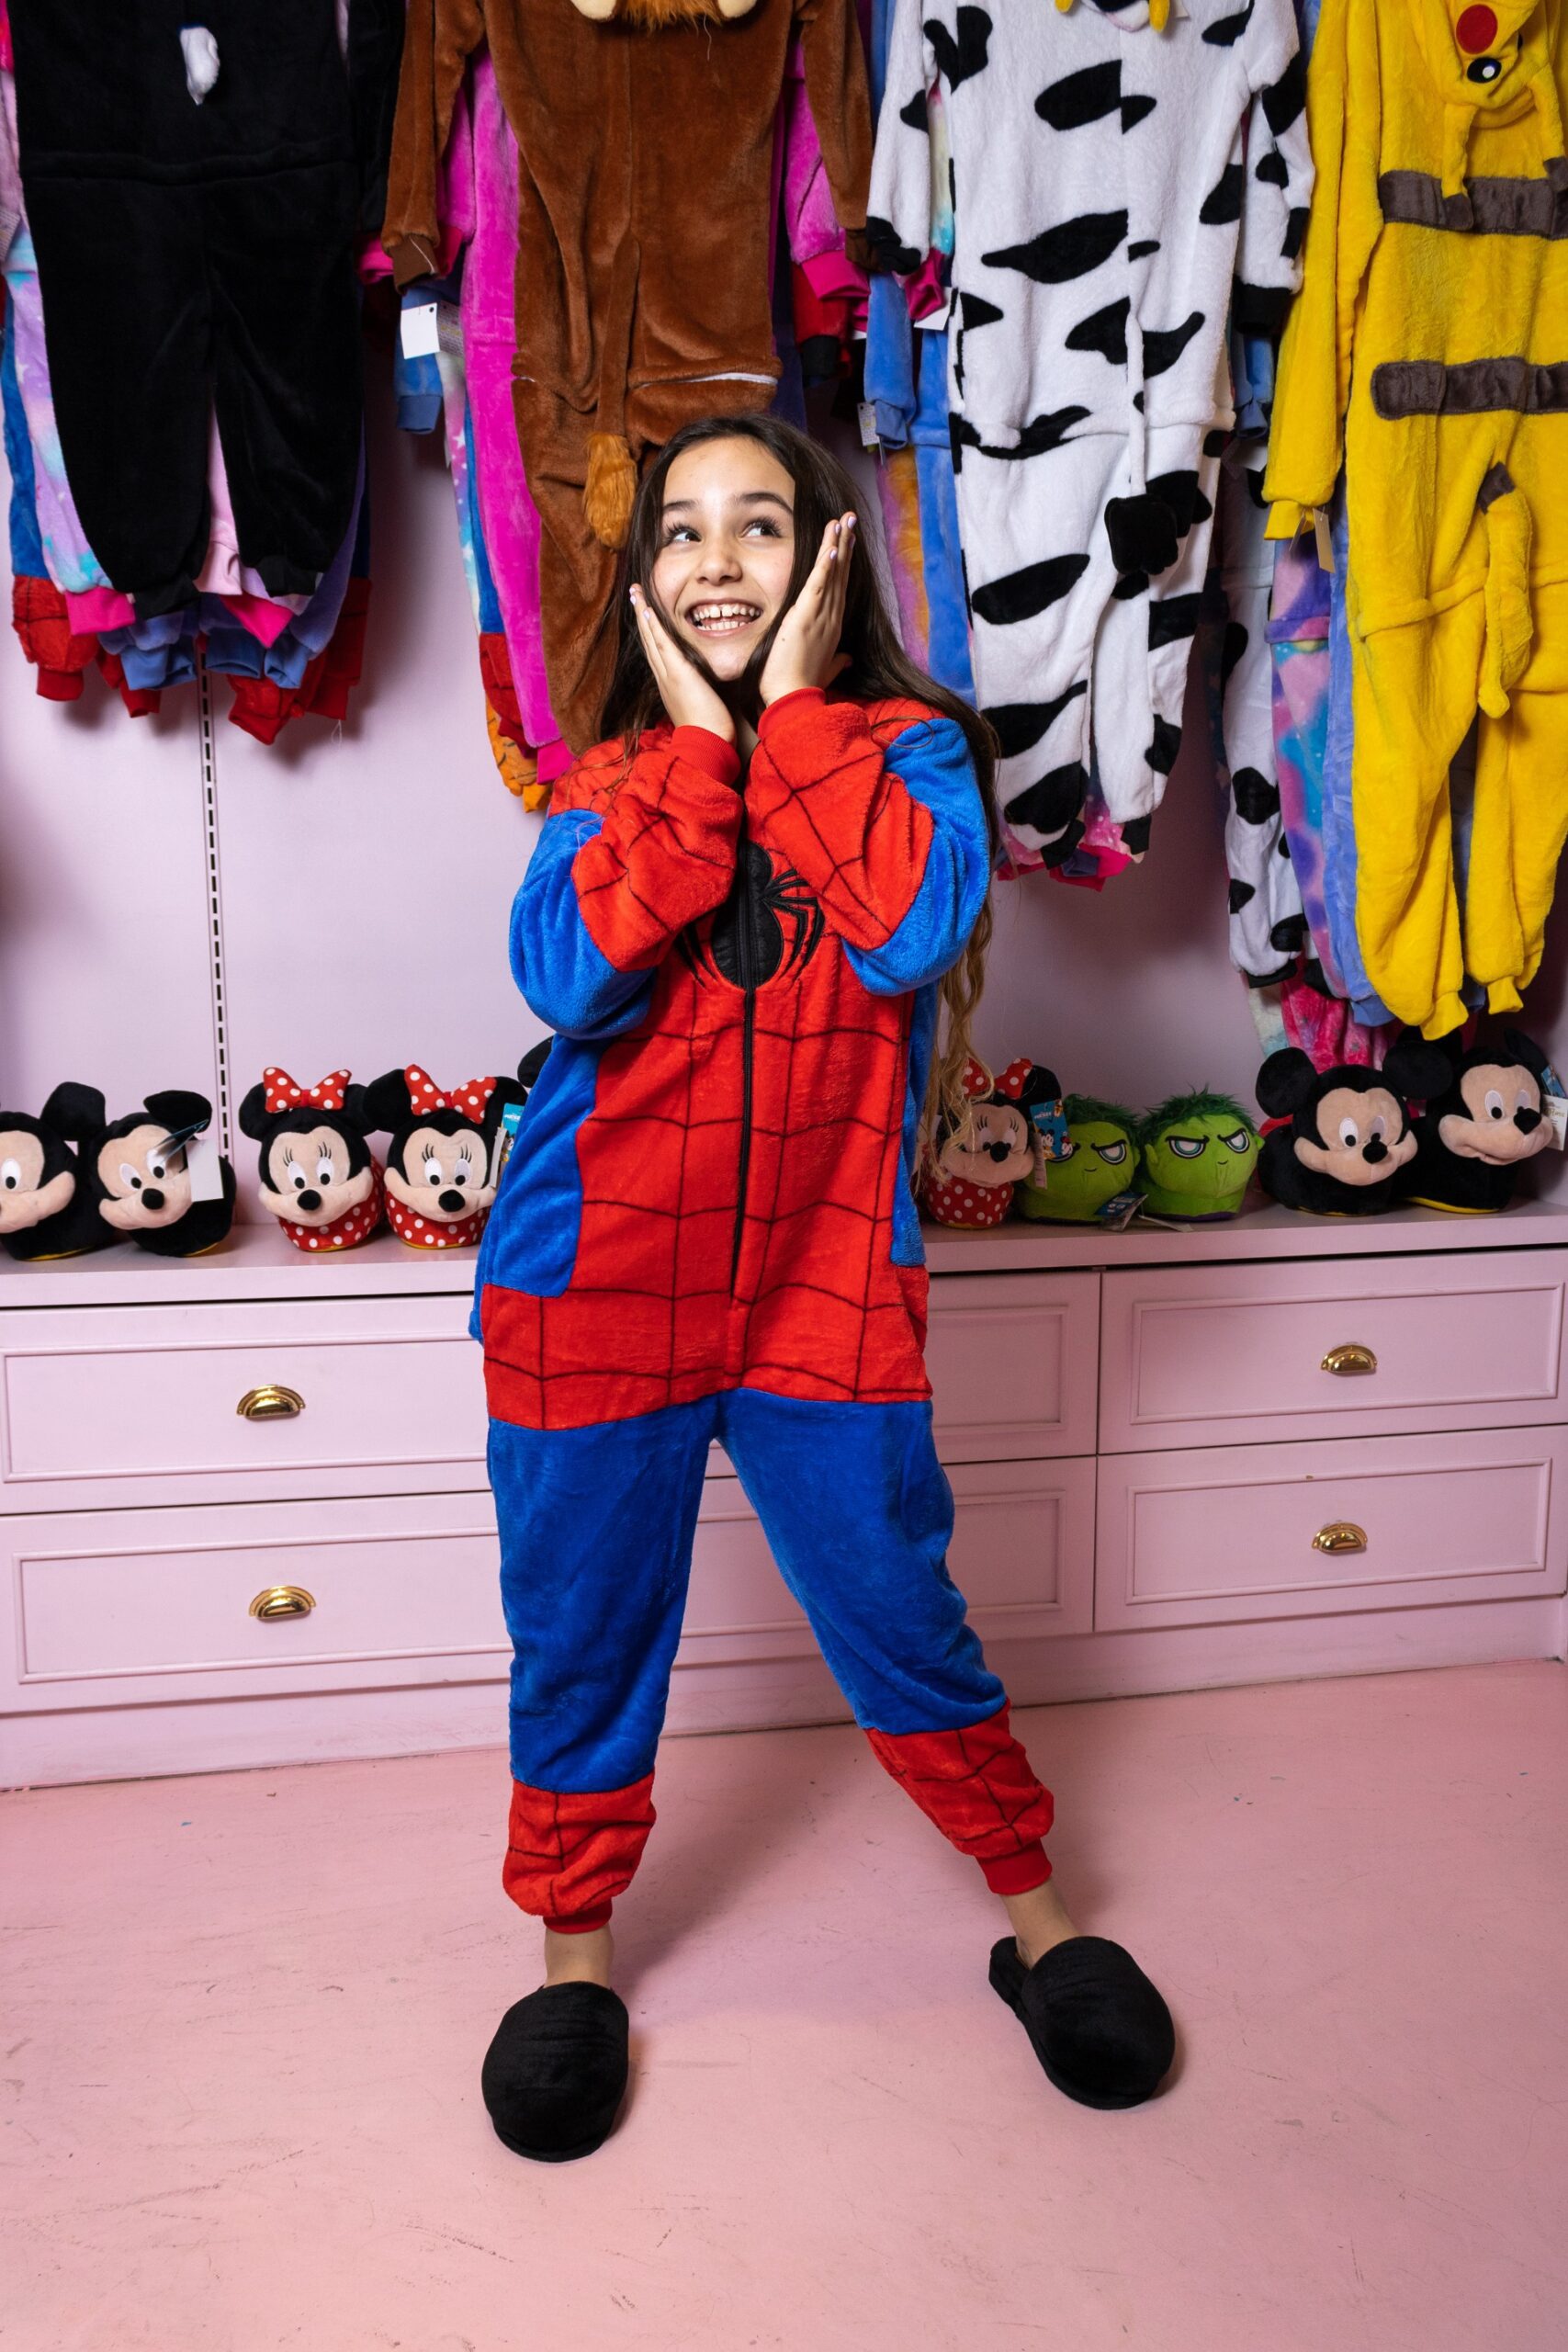 Pijama Entero Spiderman Tan